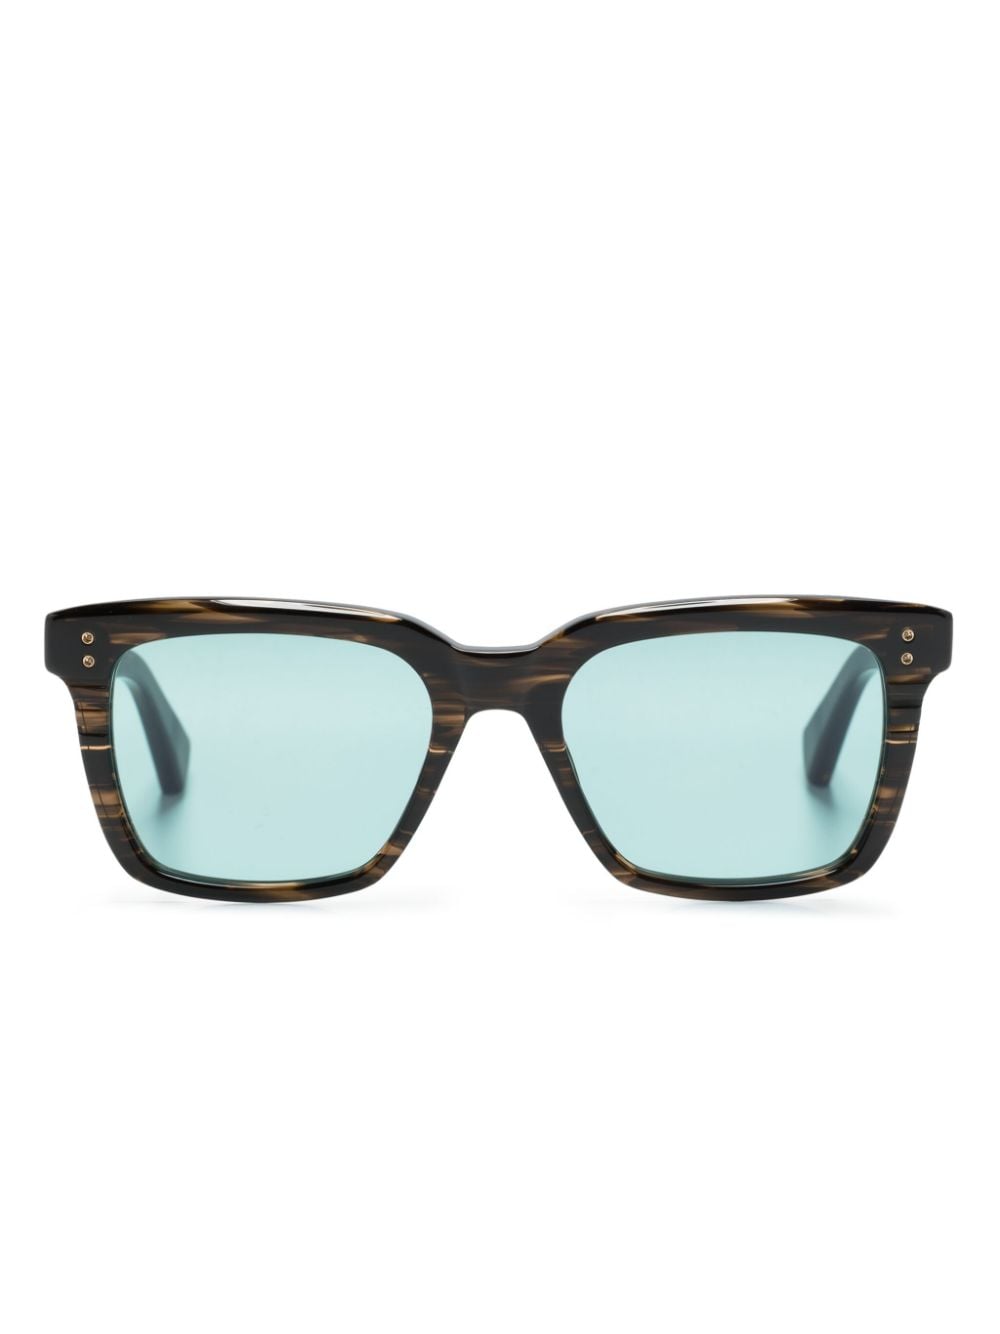 Sequoia square-frame sunglasses